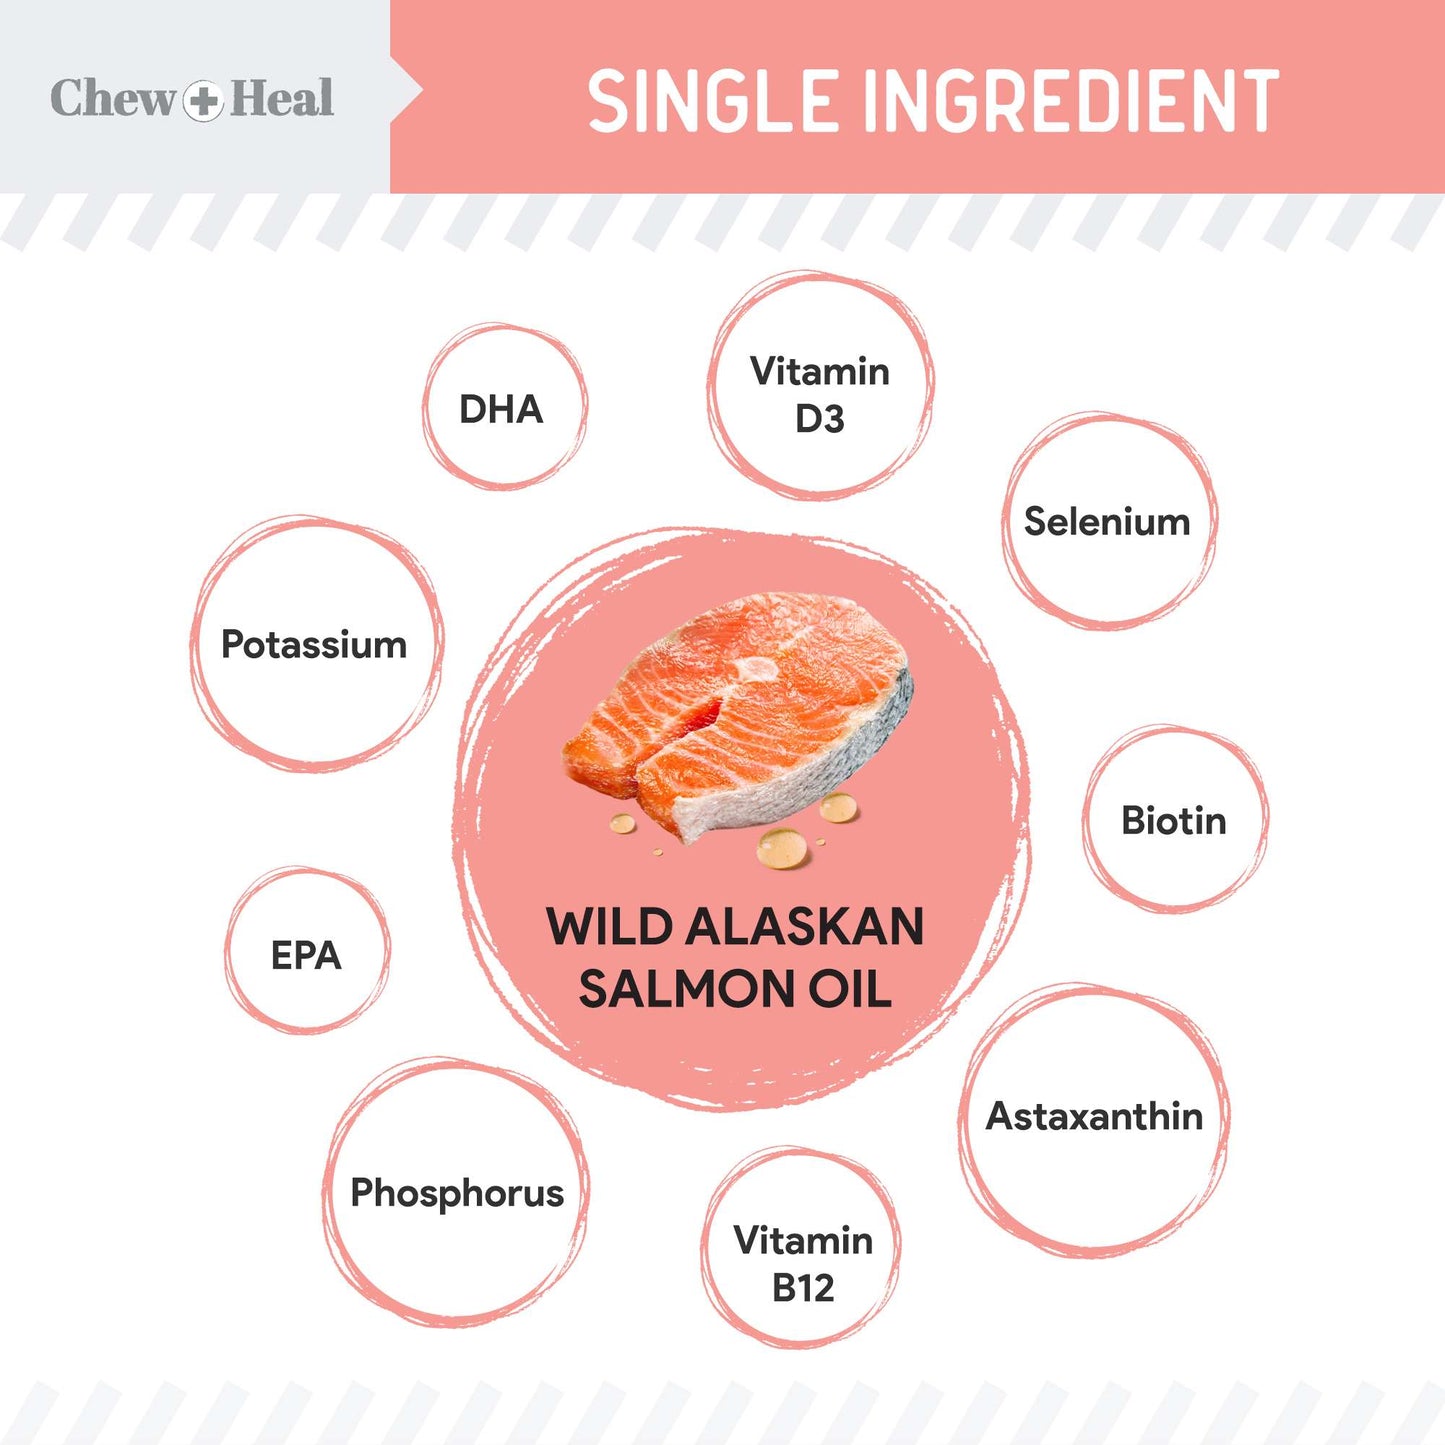 Pure Wild Alaskan Salmon Oil for Dogs